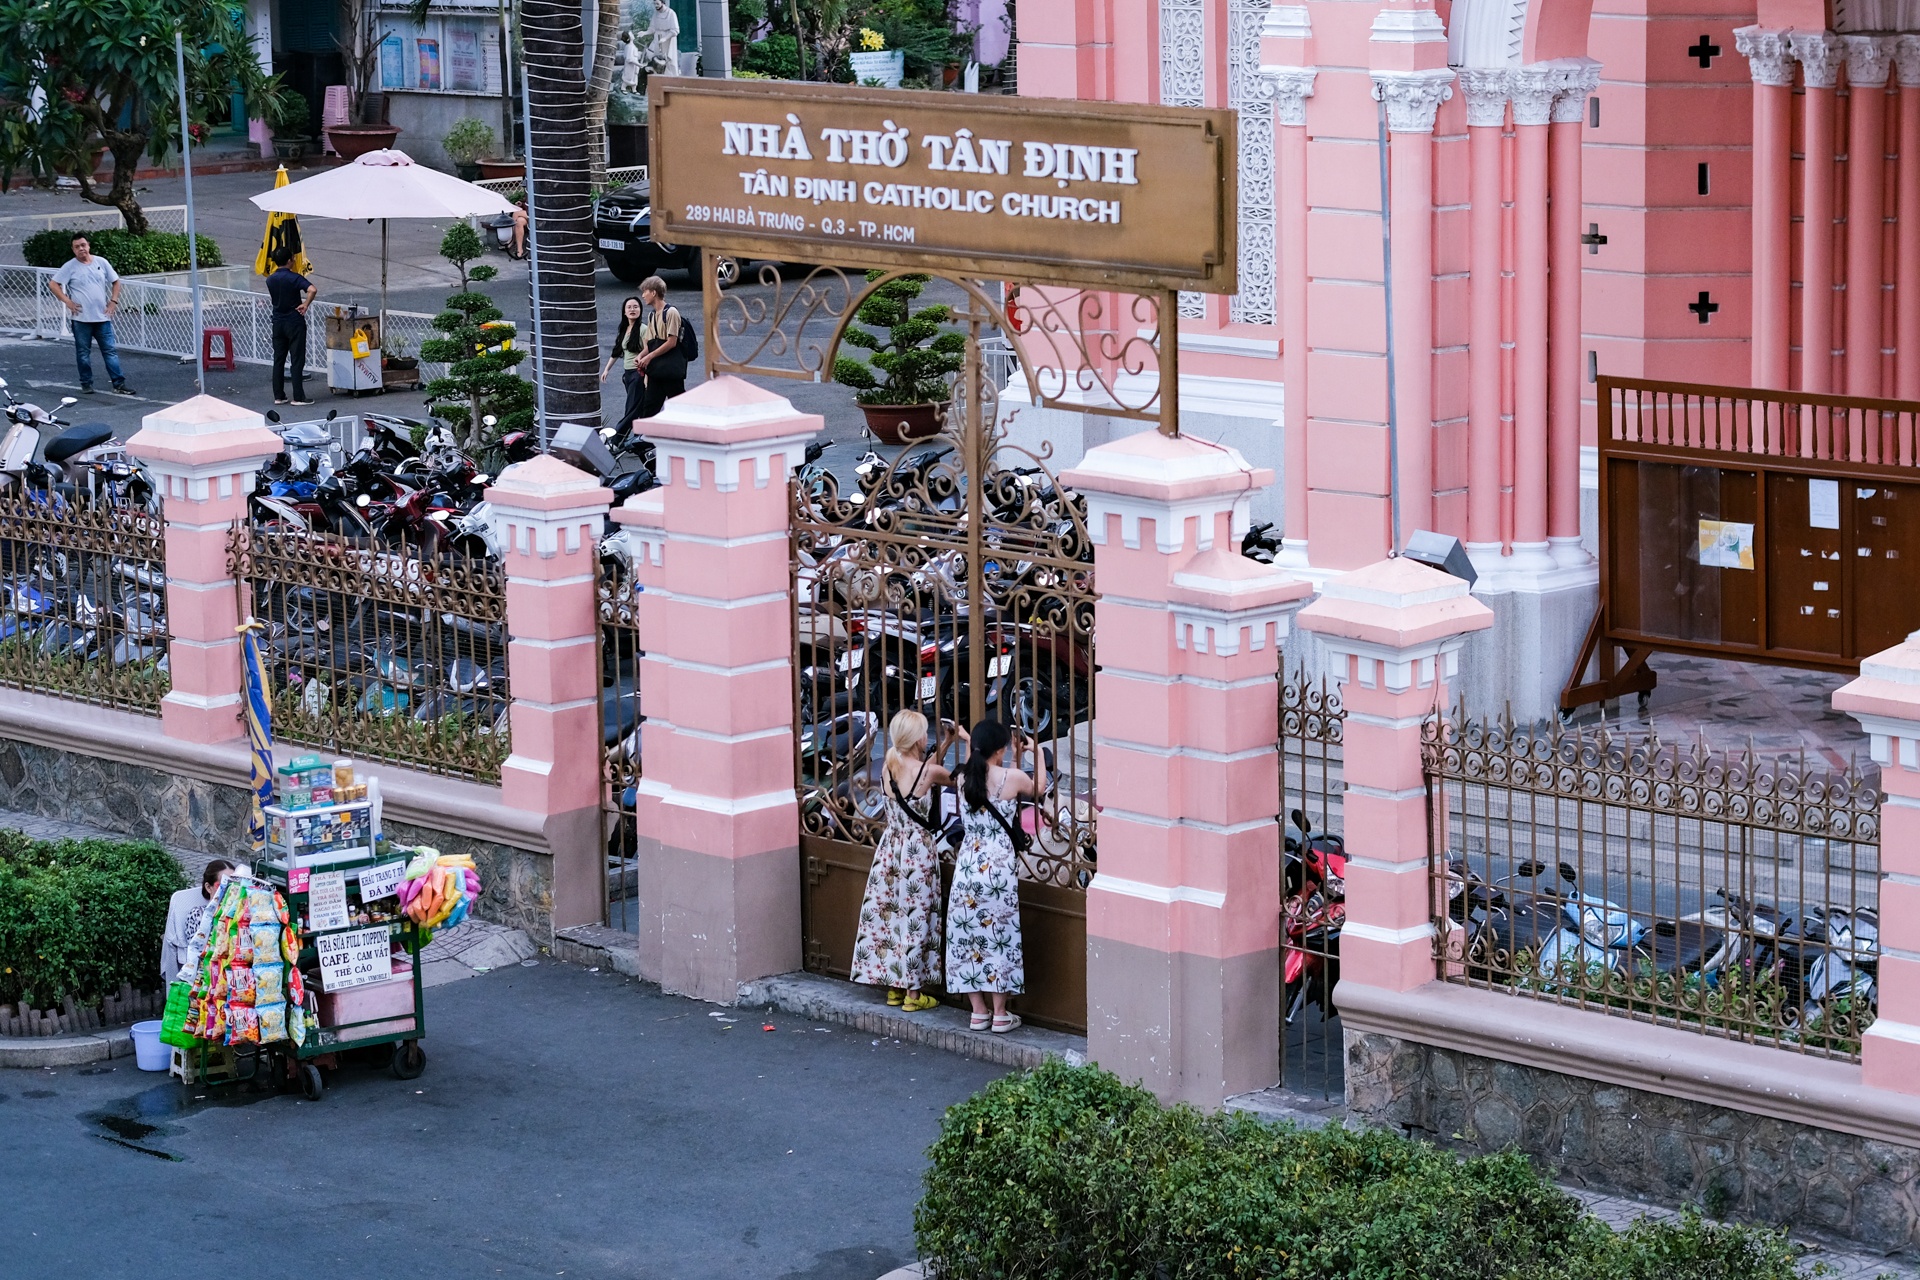 Hàng trăm khách châu Á đến nhà thờ Tân Định chụp ảnh mỗi ngày - ảnh 14